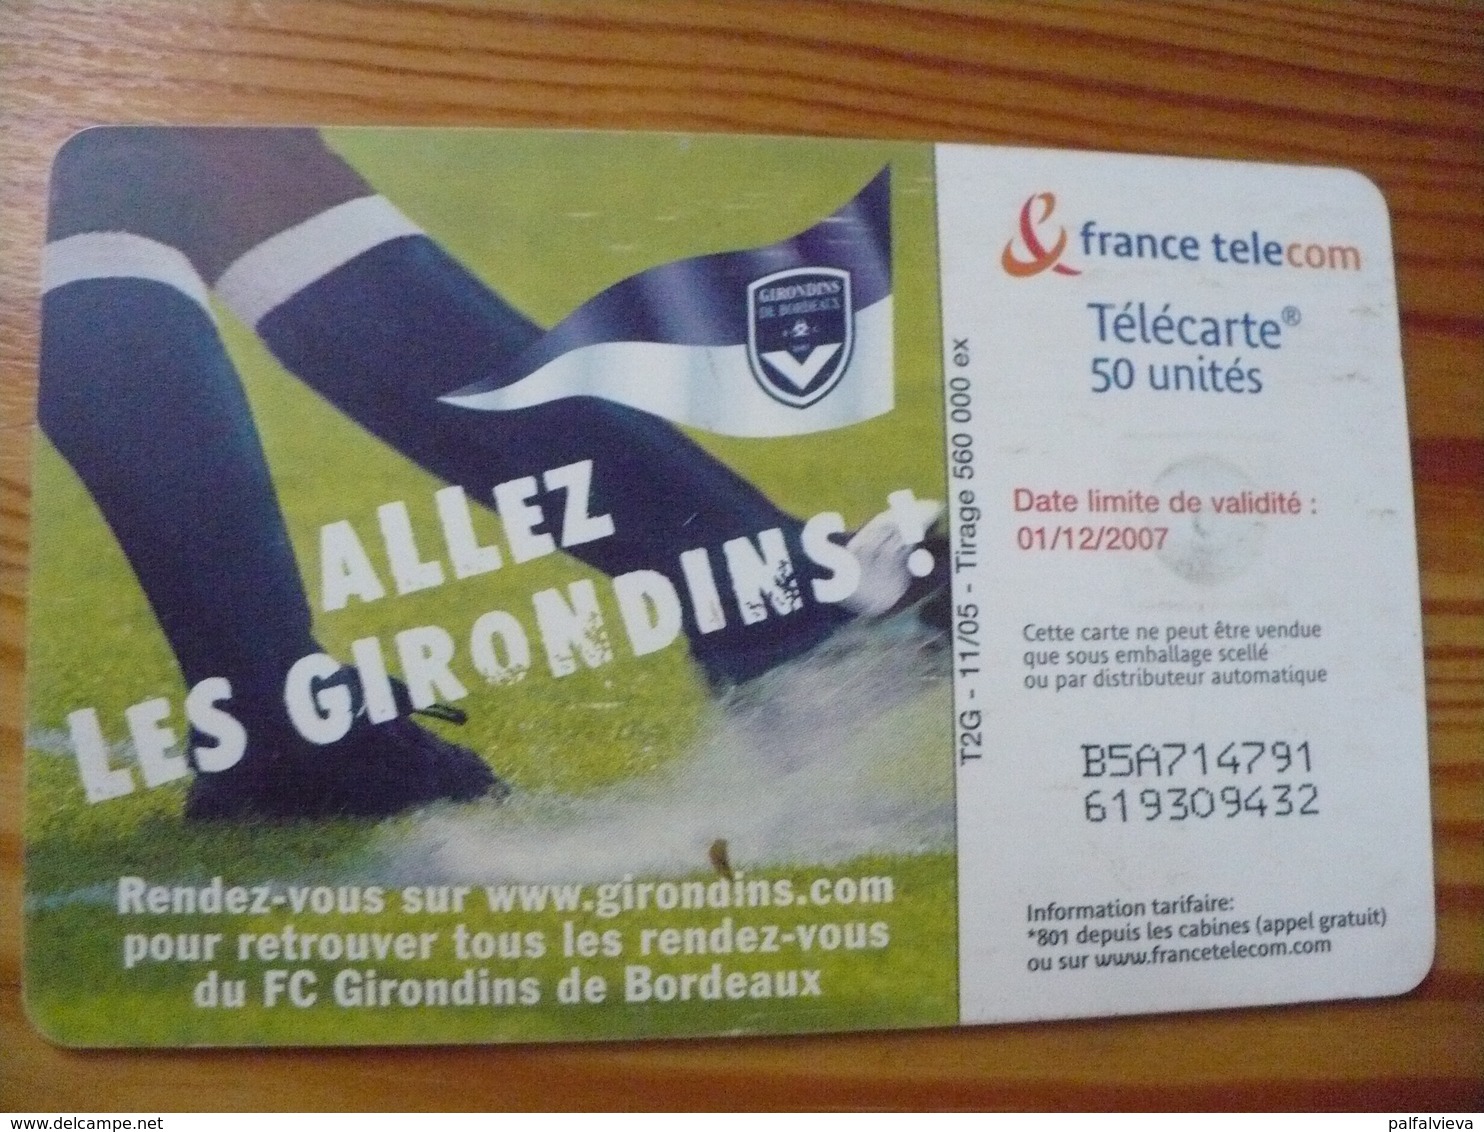 Phonecard France - Football - 2005